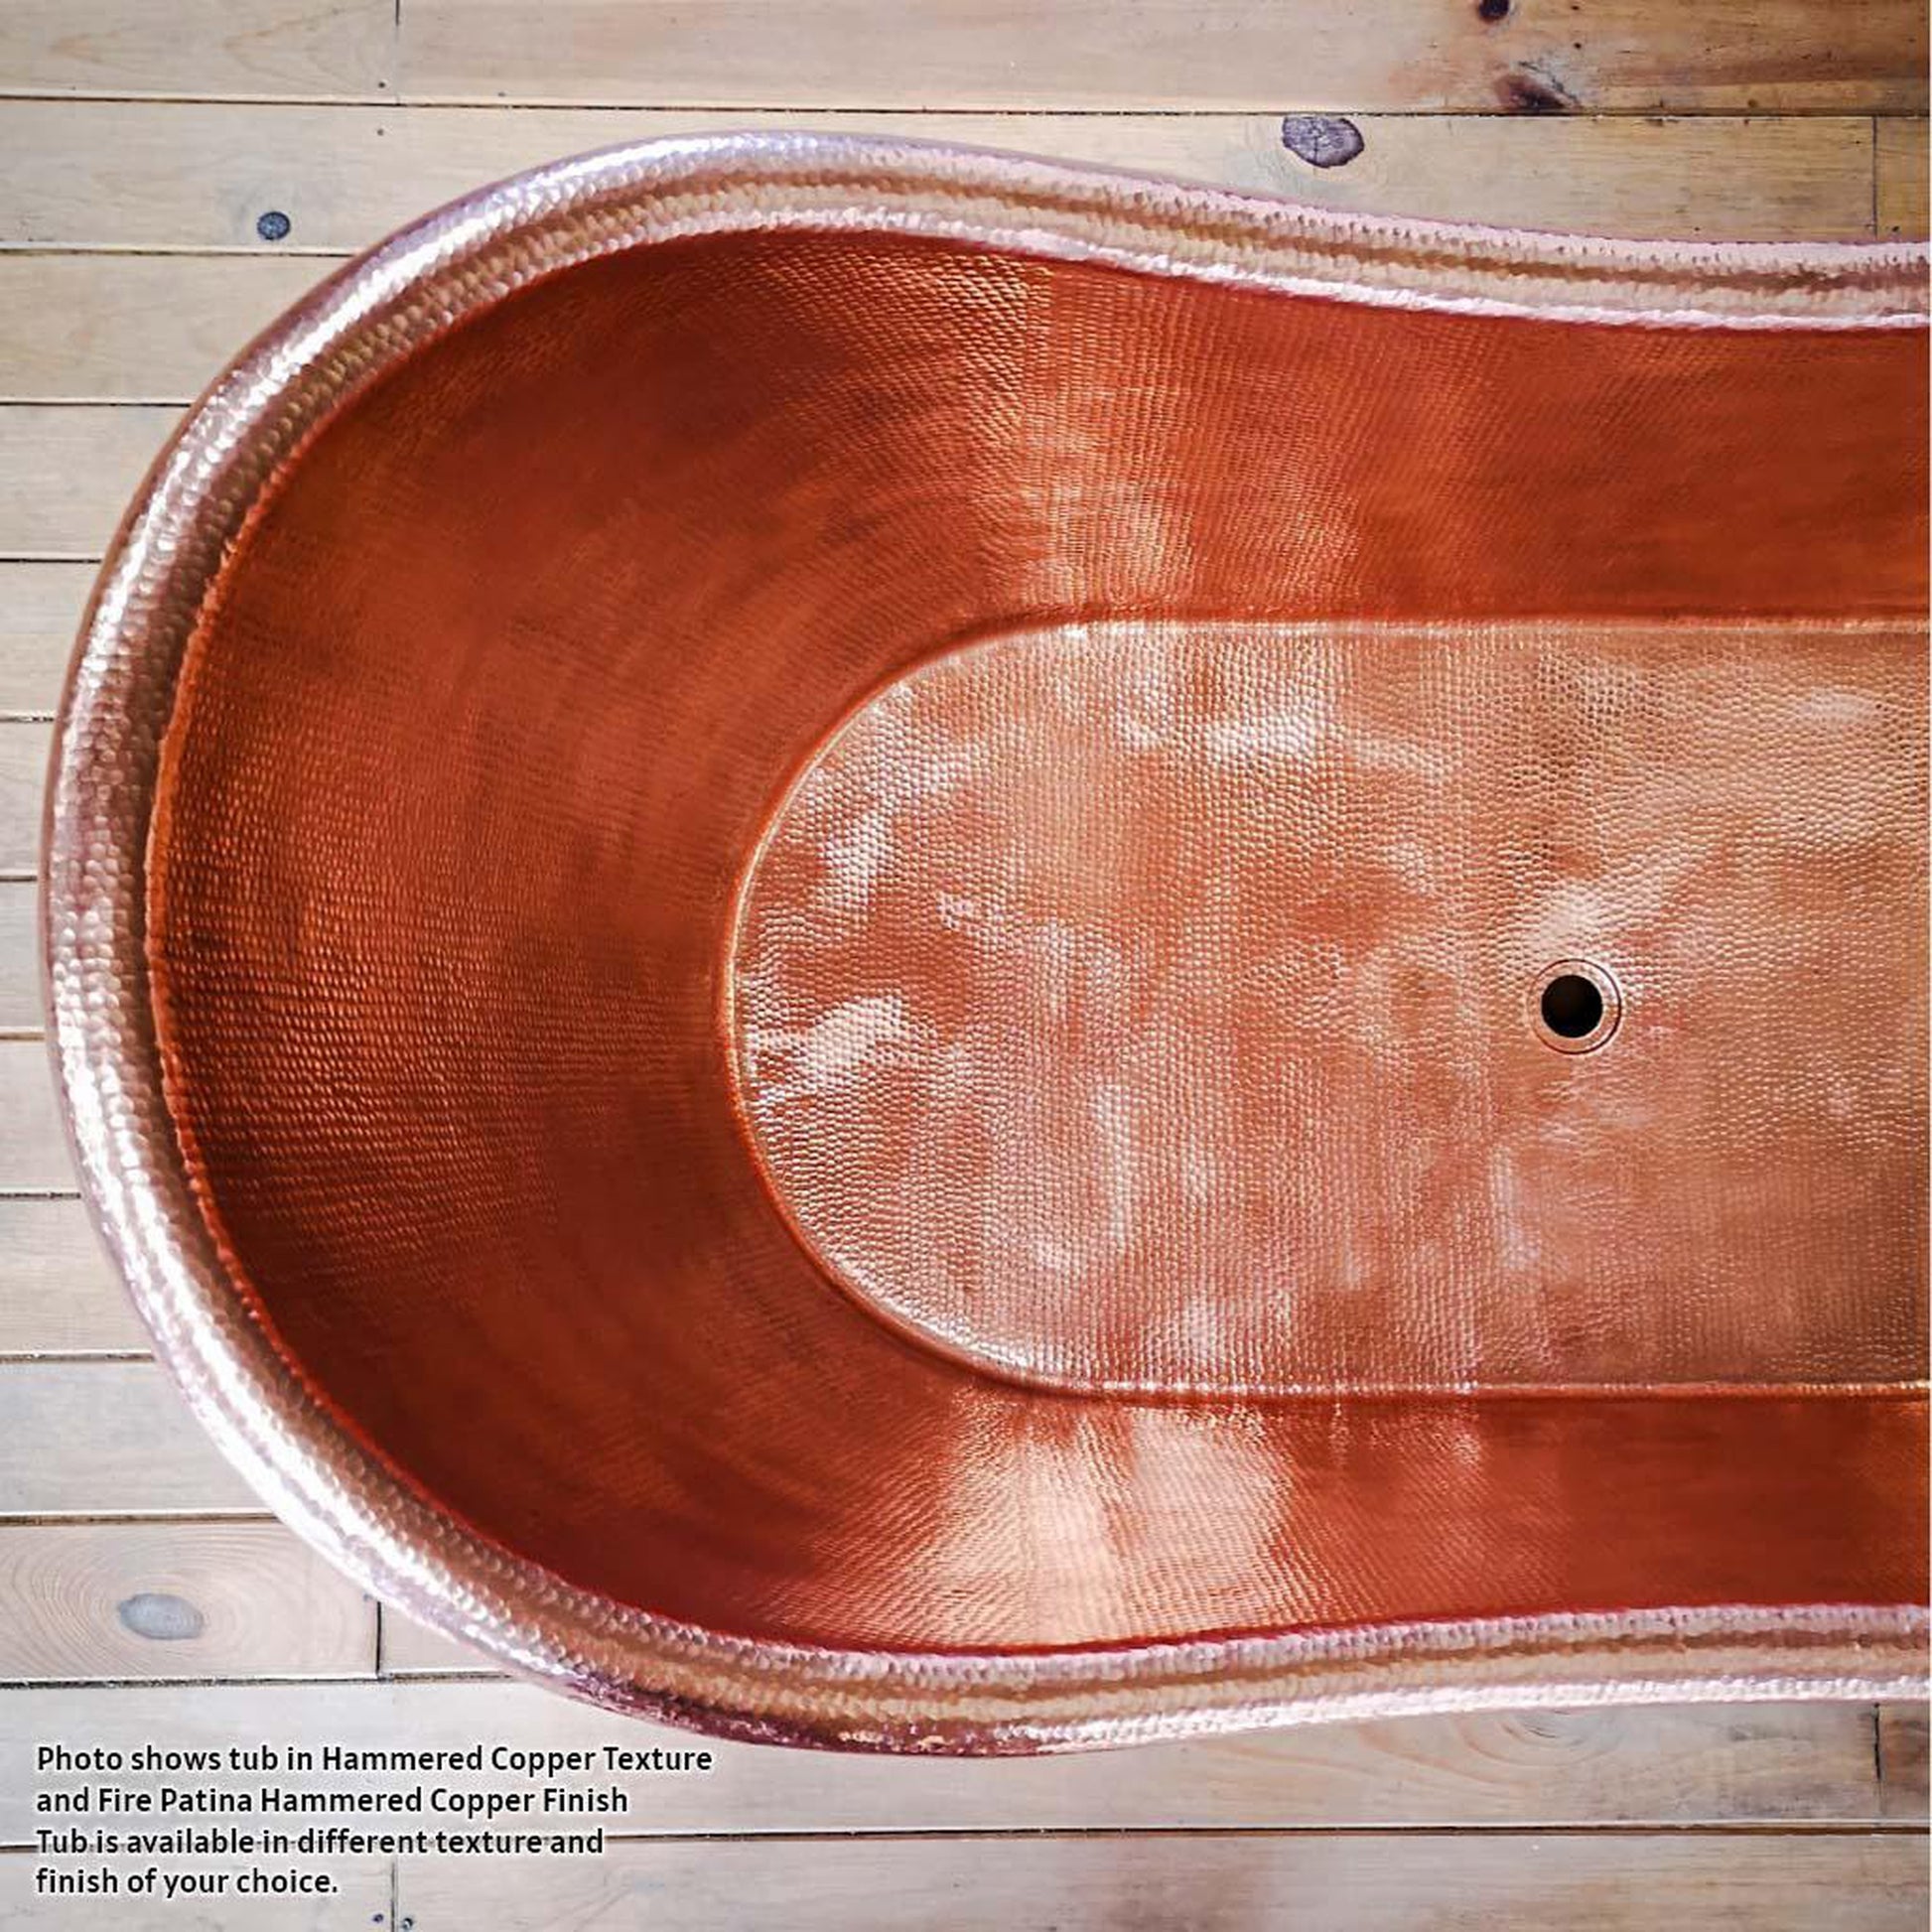 Amoretti Brothers Classica 70" Freestanding Soaking Copper Tub in Copper Finish